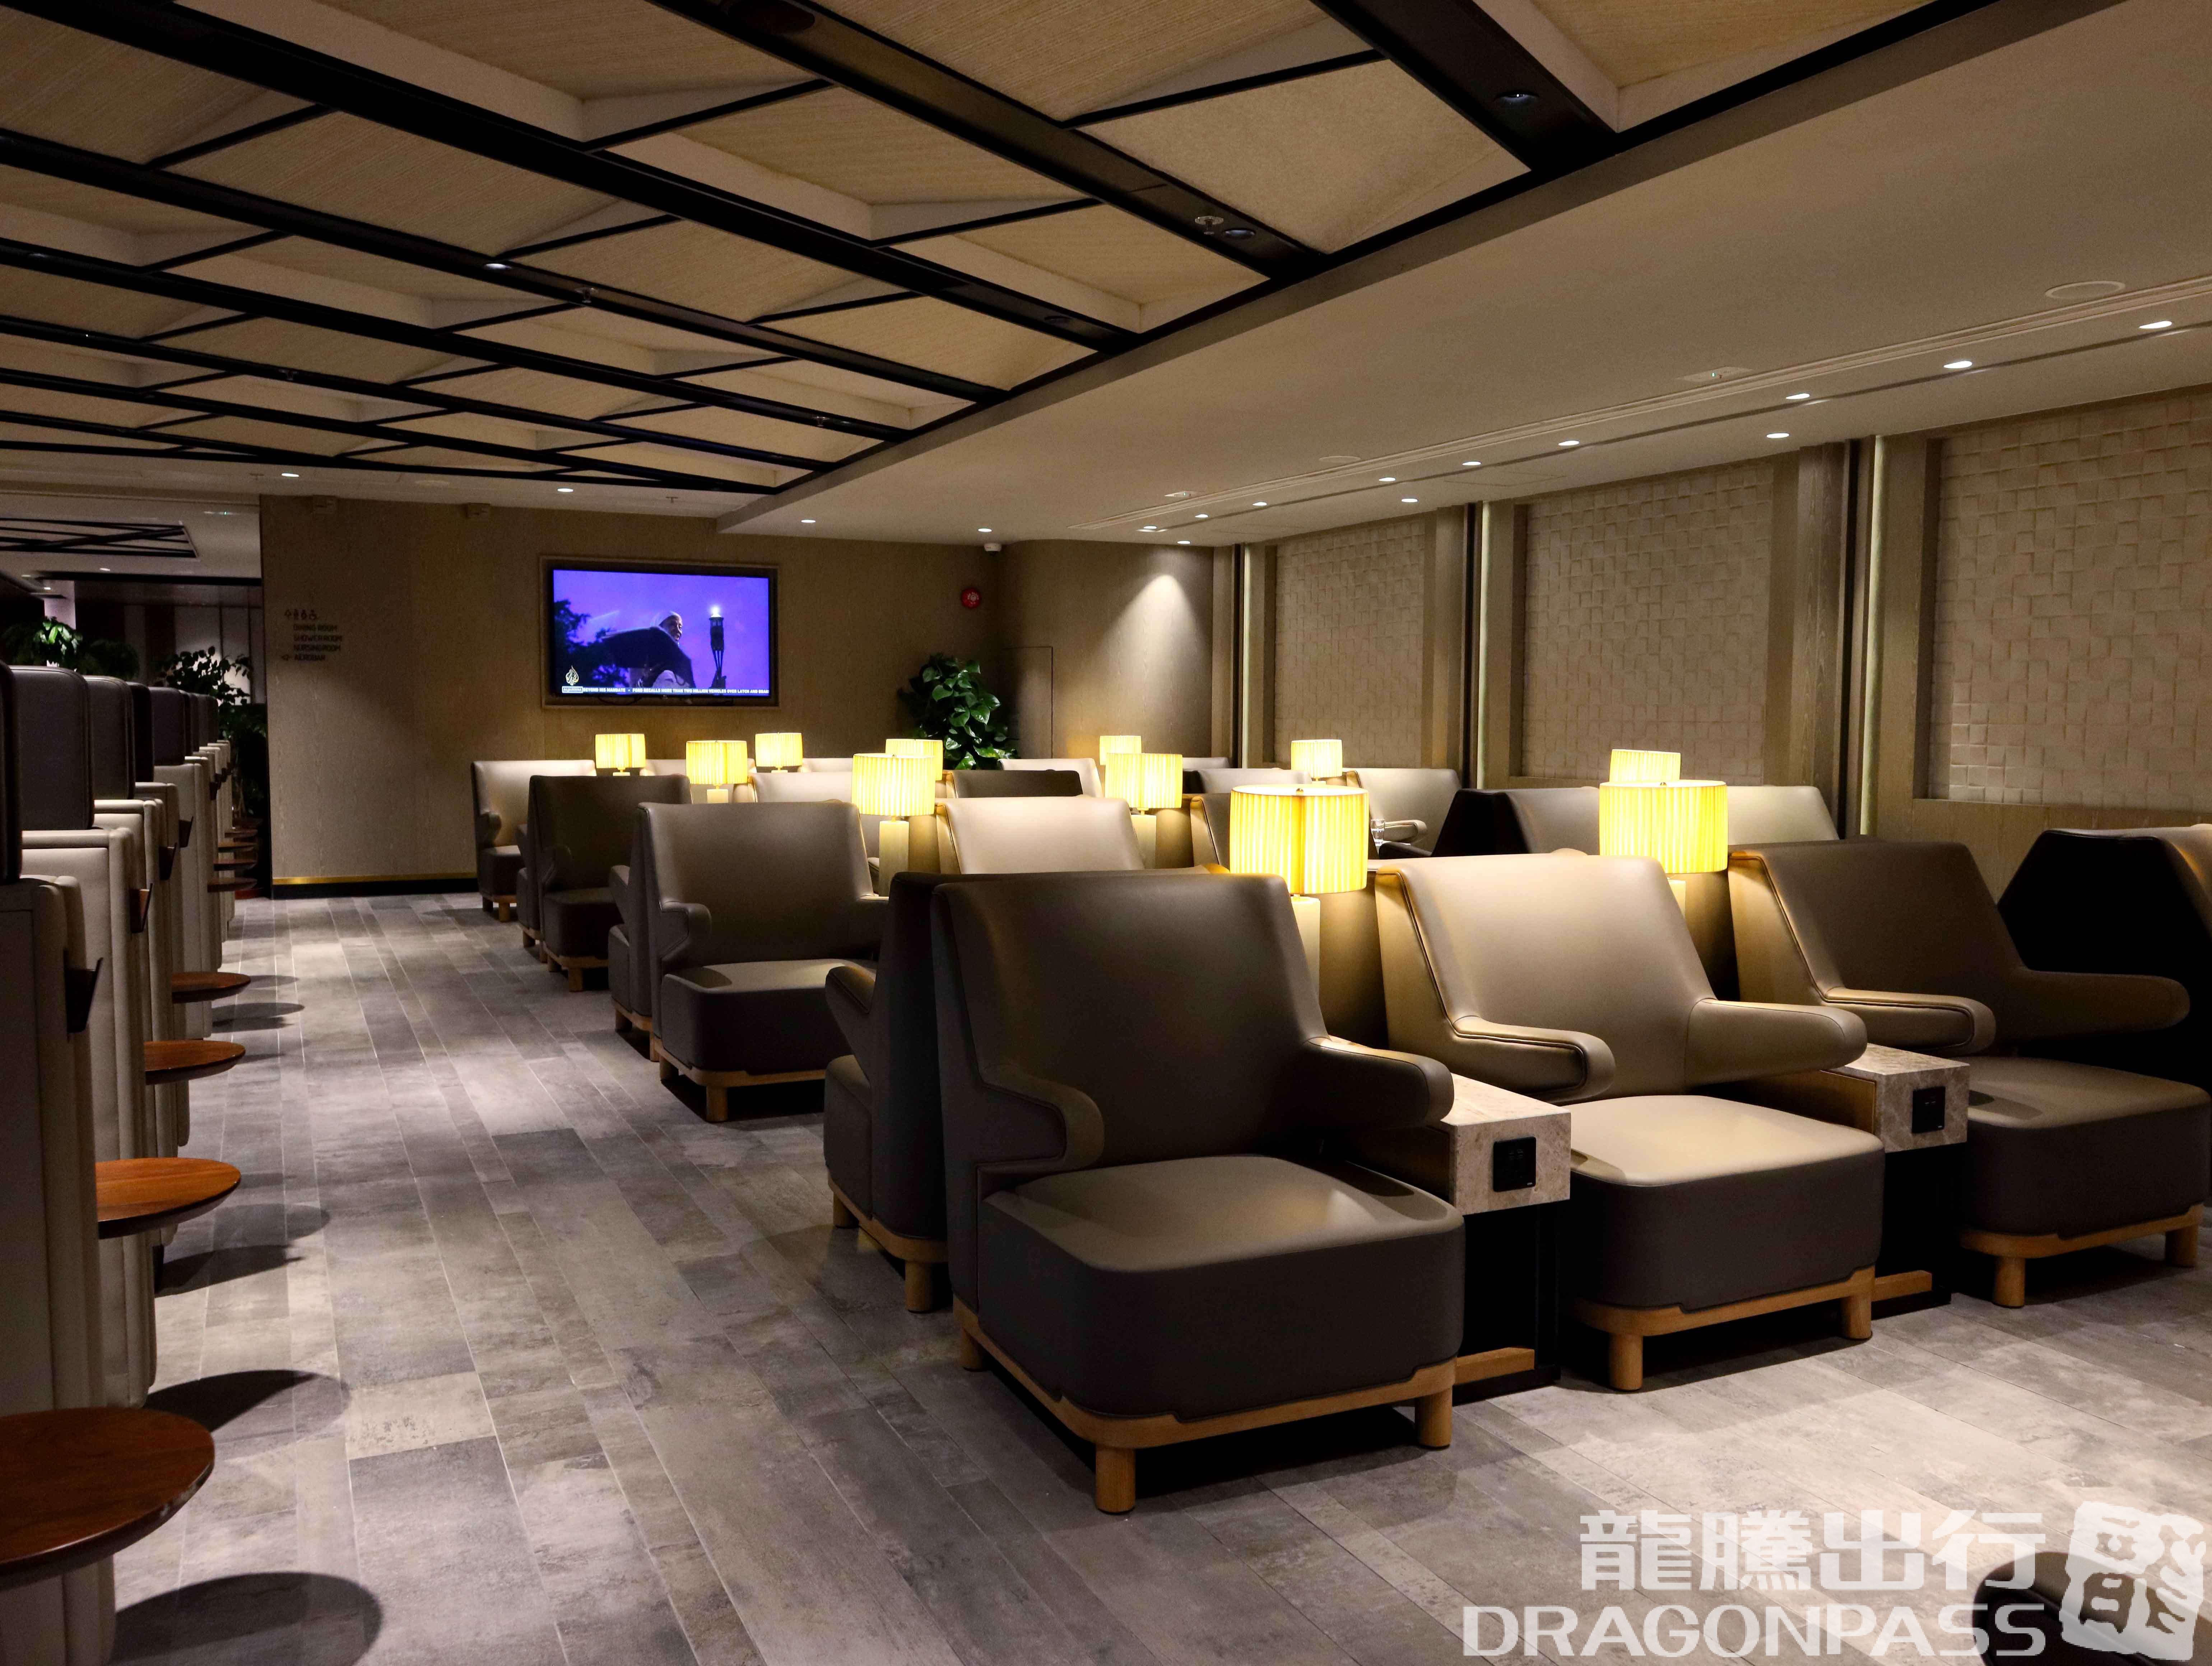 香港国际机场Plaza Premium Lounge (T1 East)